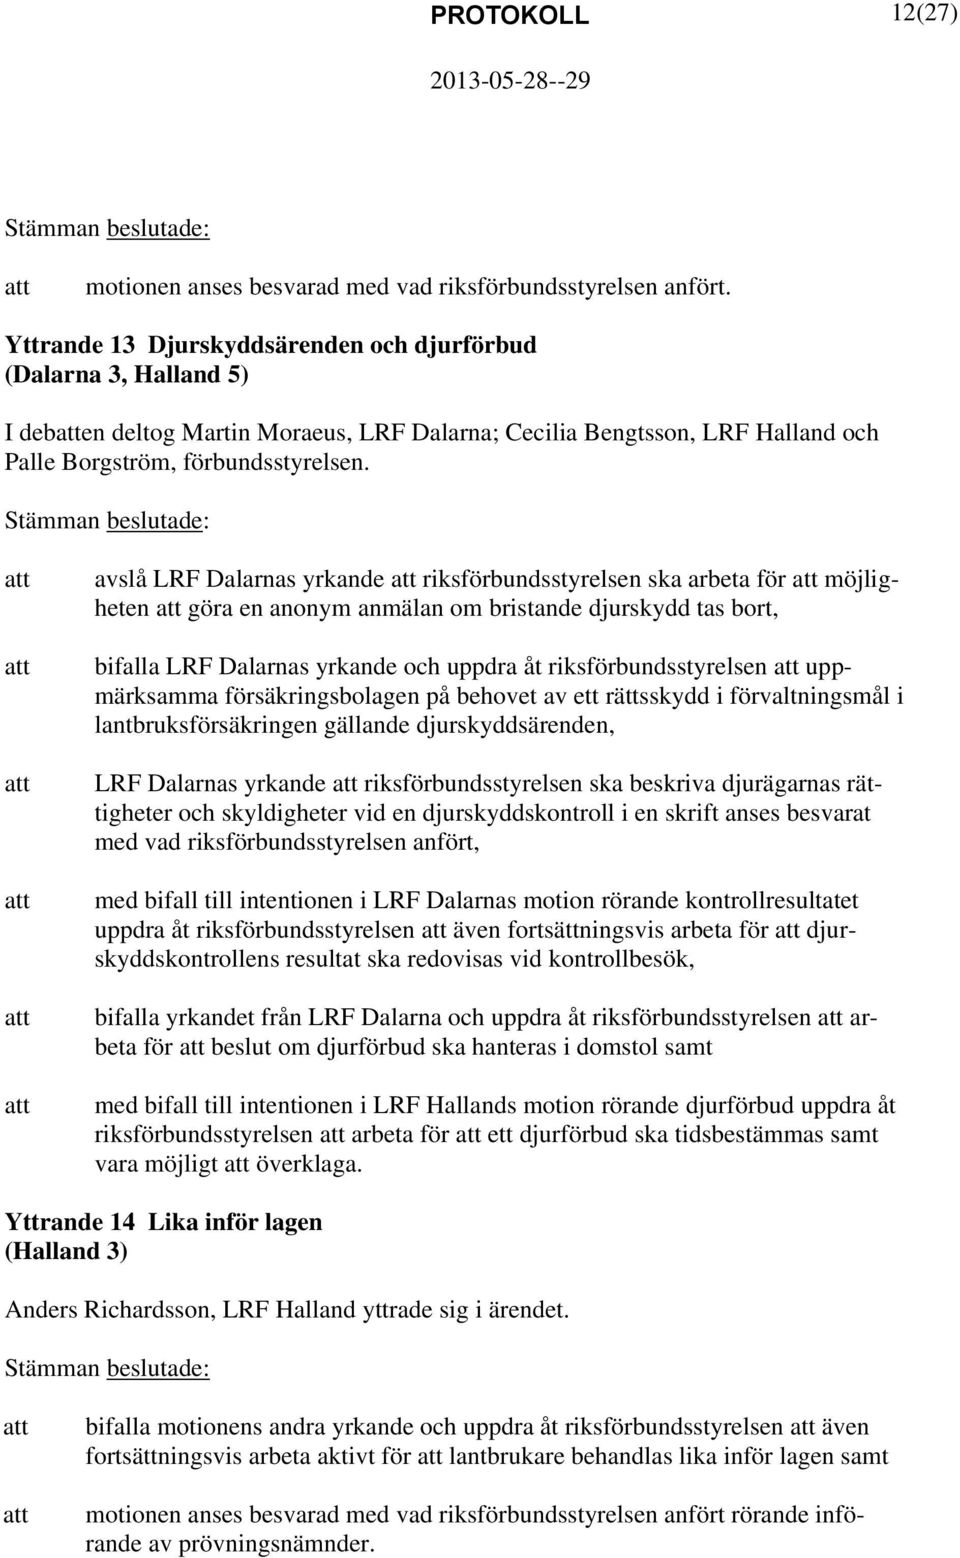 avslå LRF Dalarnas yrkande riksförbundsstyrelsen ska arbeta för möjligheten göra en anonym anmälan om bristande djurskydd tas bort, bifalla LRF Dalarnas yrkande och uppdra åt riksförbundsstyrelsen